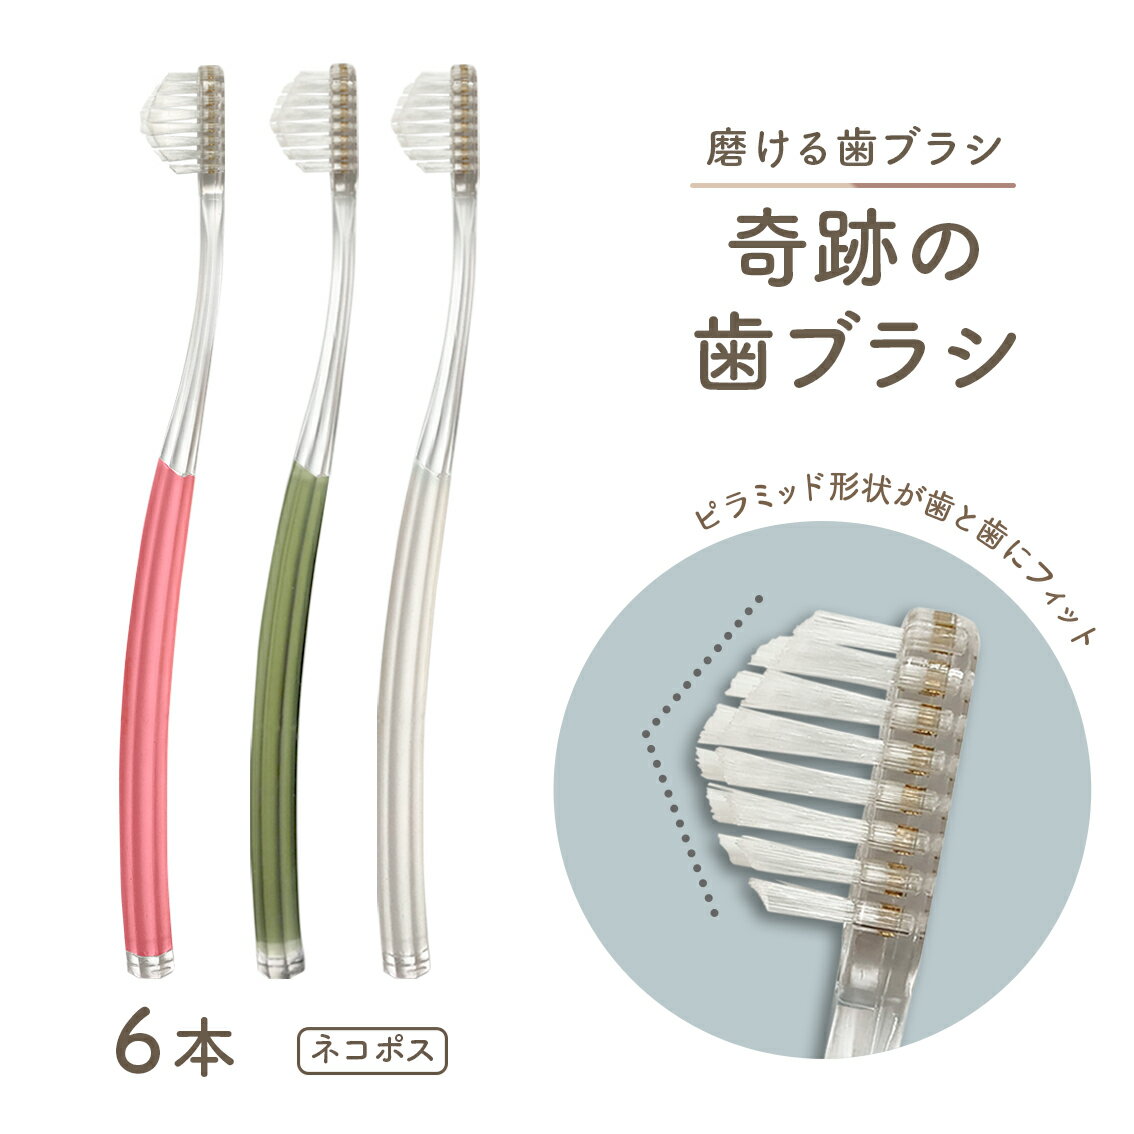 公式奇跡の歯ブラシ 6本セット ネコポス 簡単 磨ける